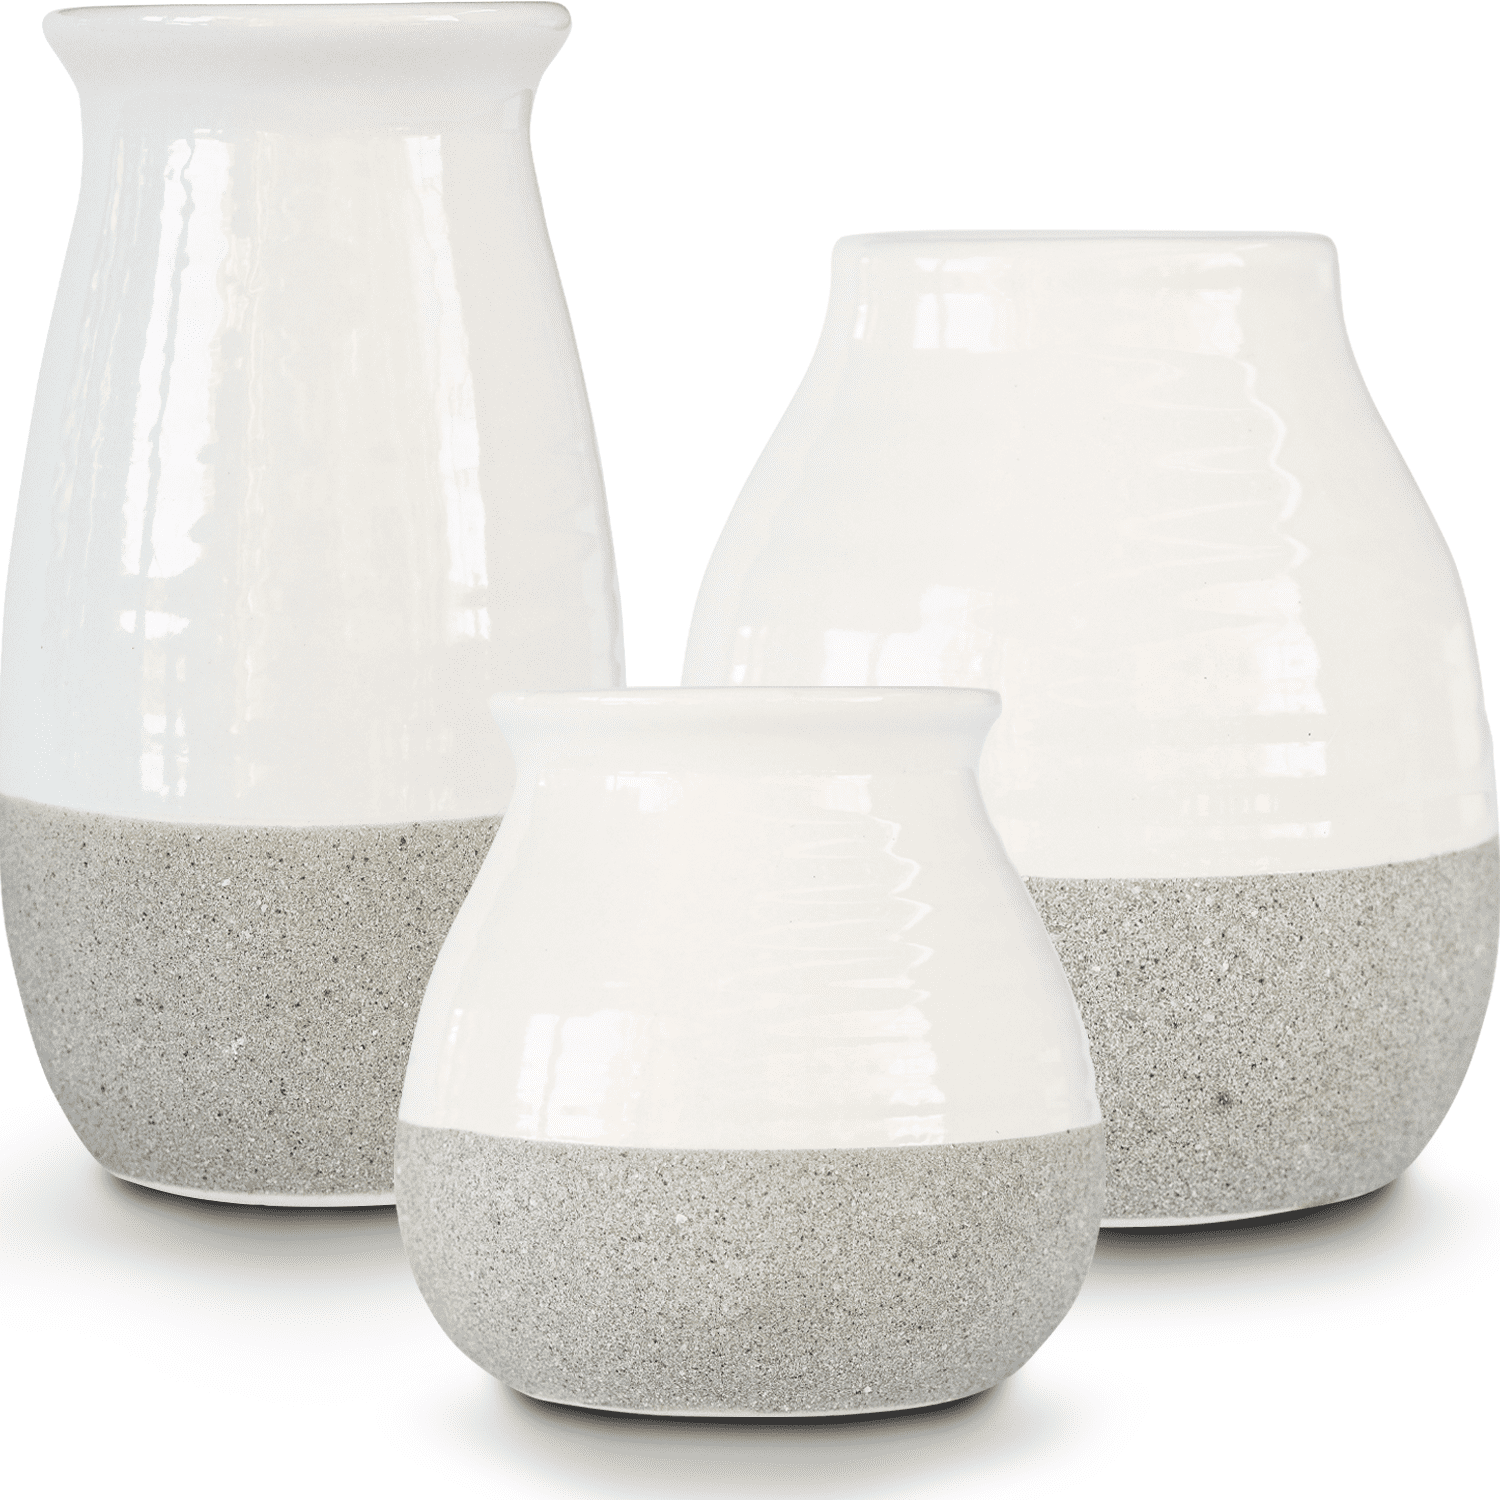 Ceramic Vase Ceramic Decor Ceramic Vase With Handles Ceramic Flower Vase Country Farm Flower Vase